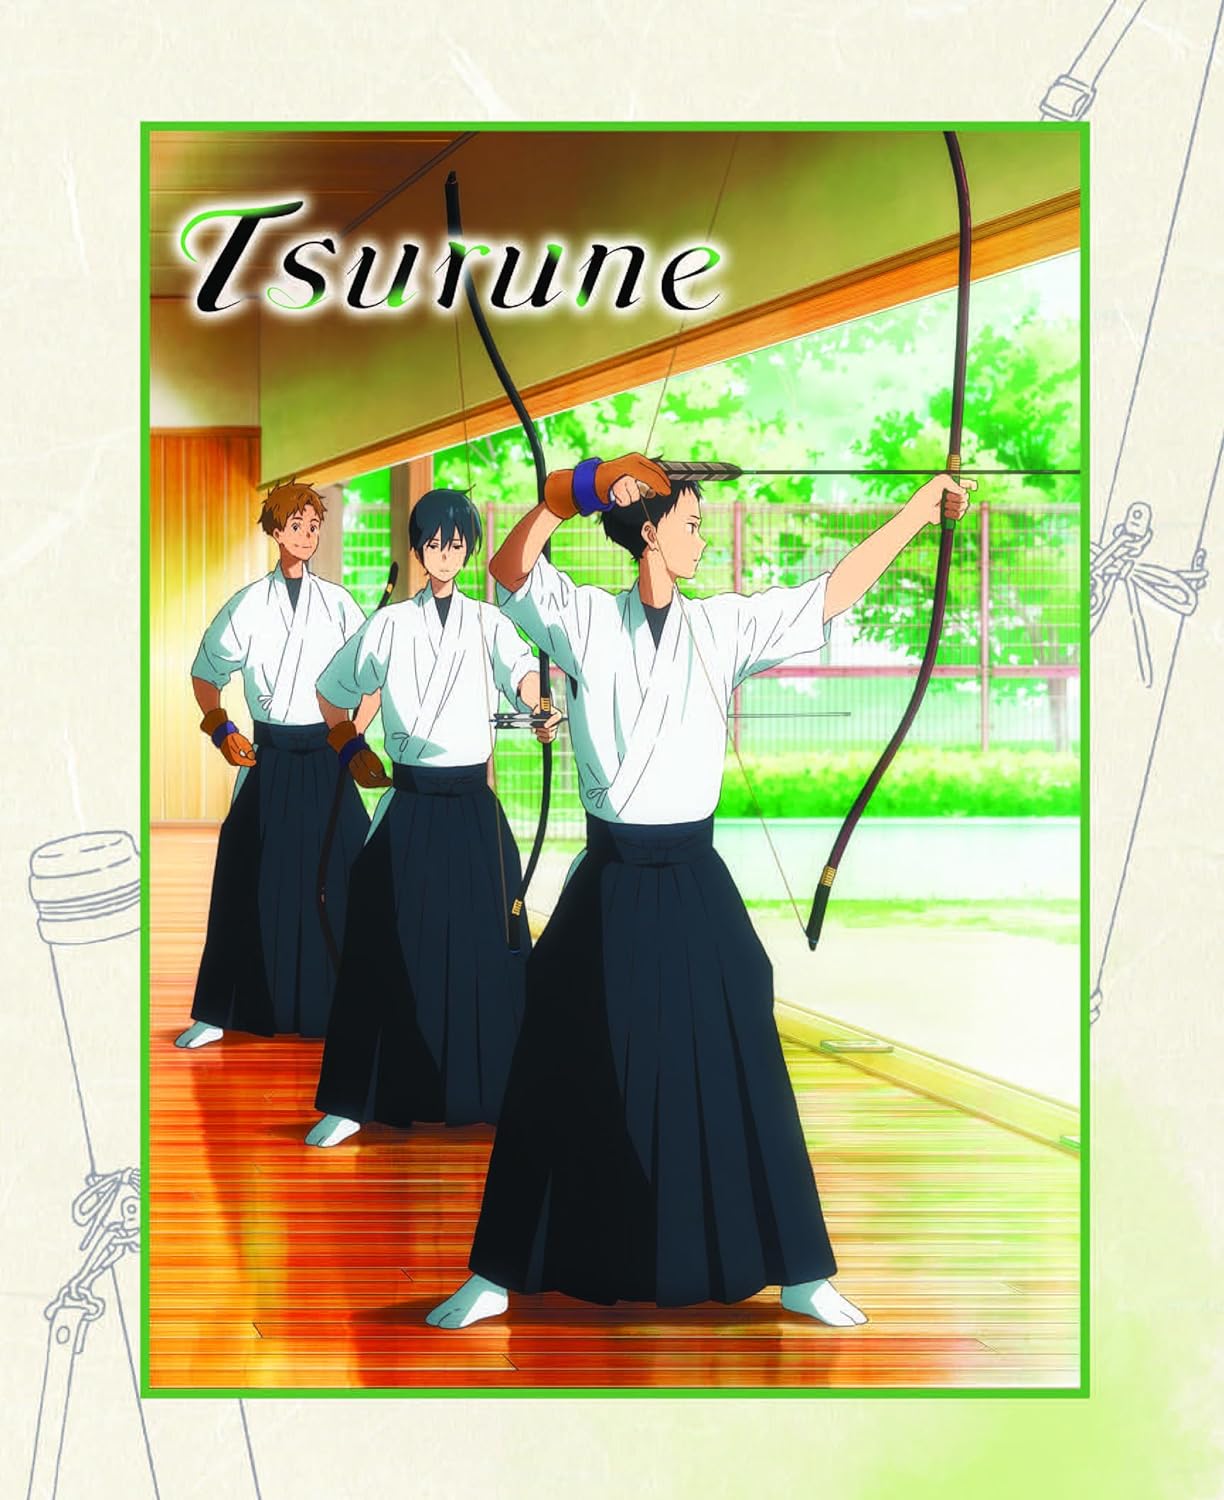 Tsurune Collector's Edition (Season 1 Episodes 1-14) Review • Anime UK News